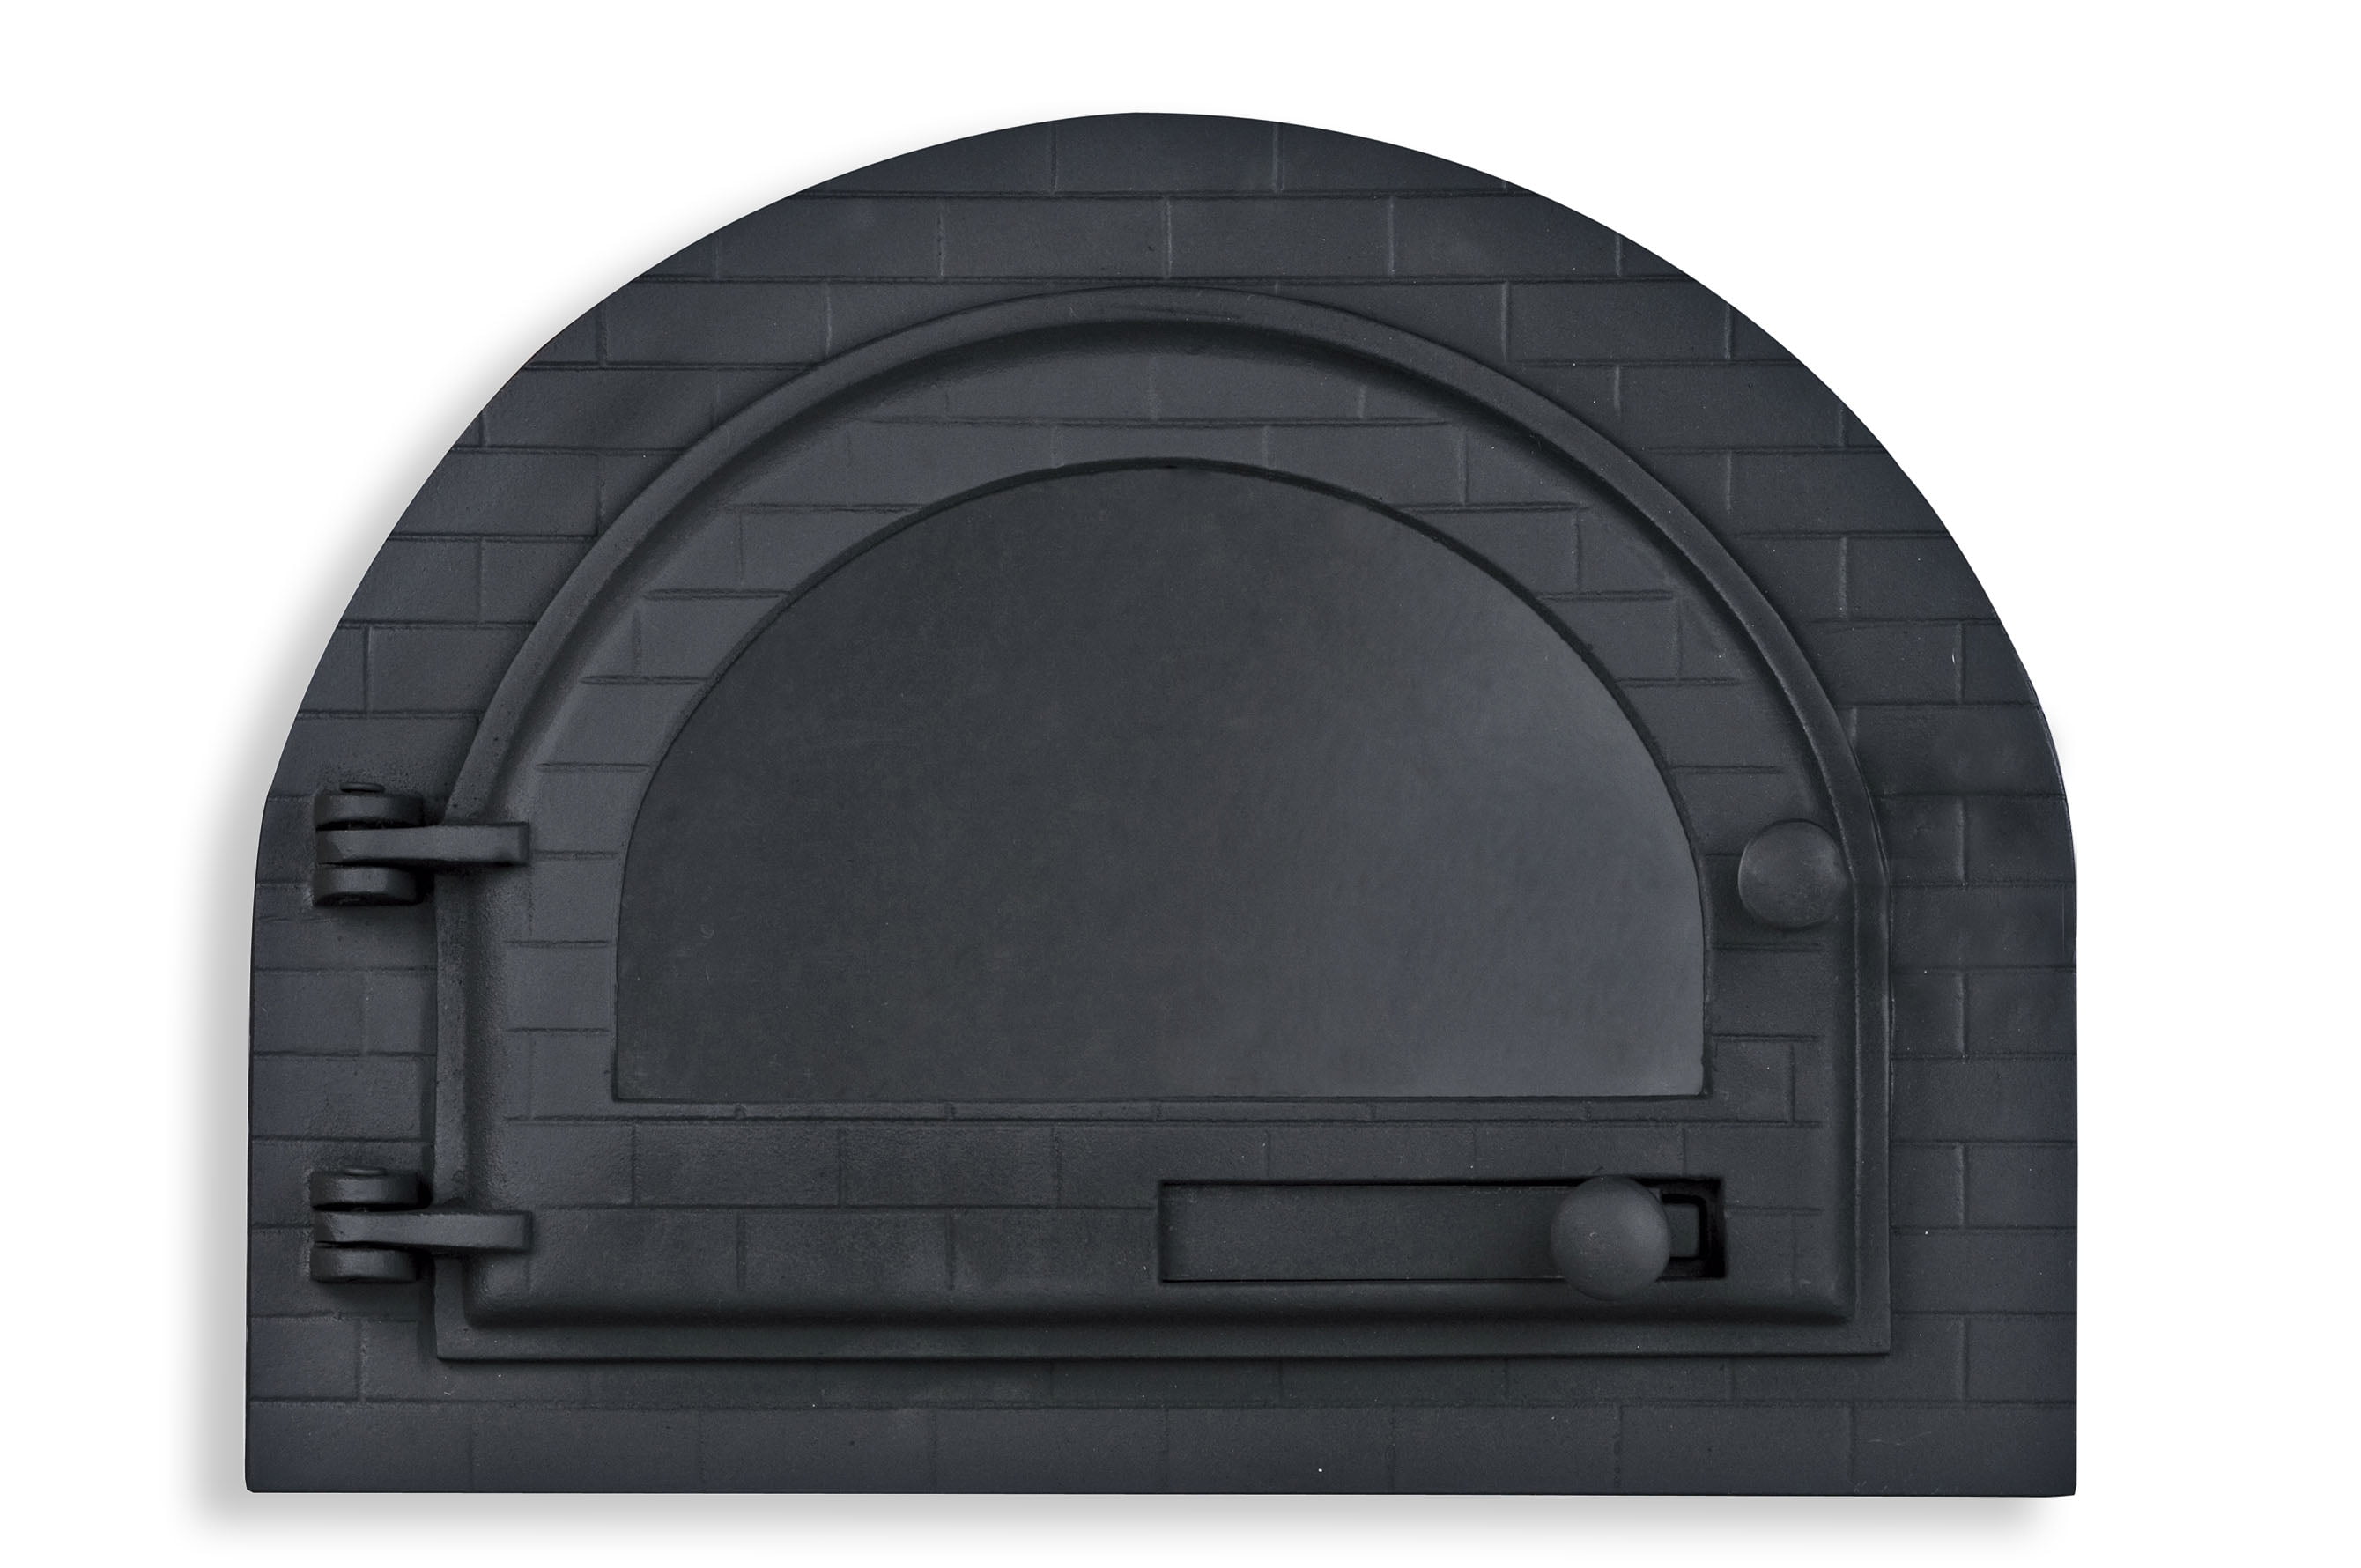 porta de forno a lenha de ferro fundido, igloo tampa de vidro modelo iglu grande. libaneza, pizza